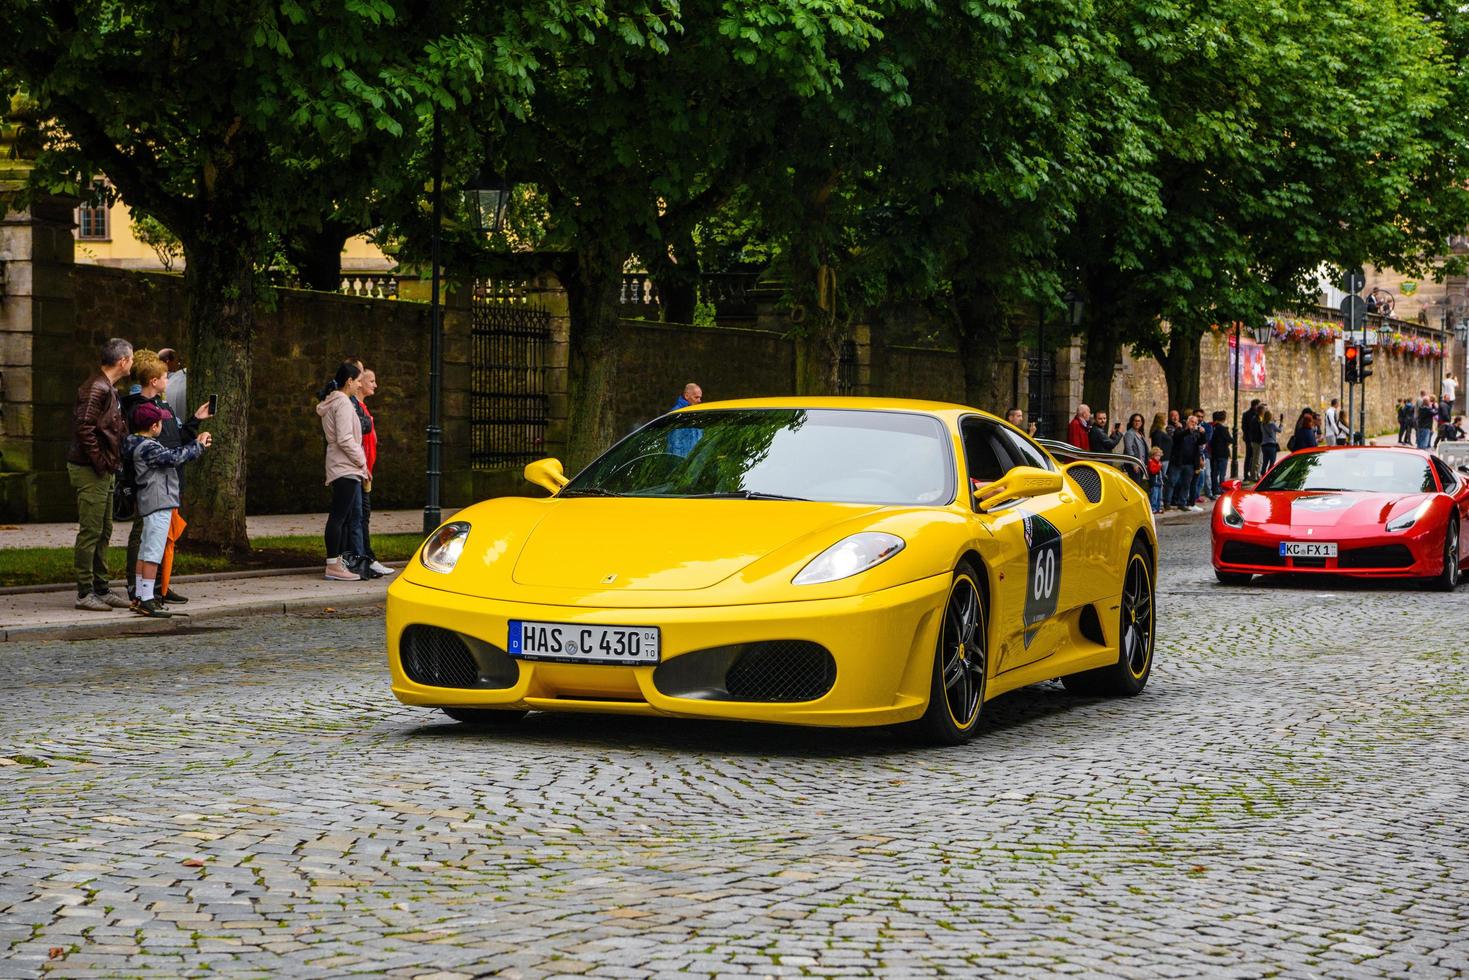 allemagne, fulda - jul 2019 jaune ferrari f430 type f131 coupé est une voiture de sport produite par le constructeur automobile italien ferrari de 2004 à 2009 en tant que successeur de la ferrari 360. la voiture est une photo